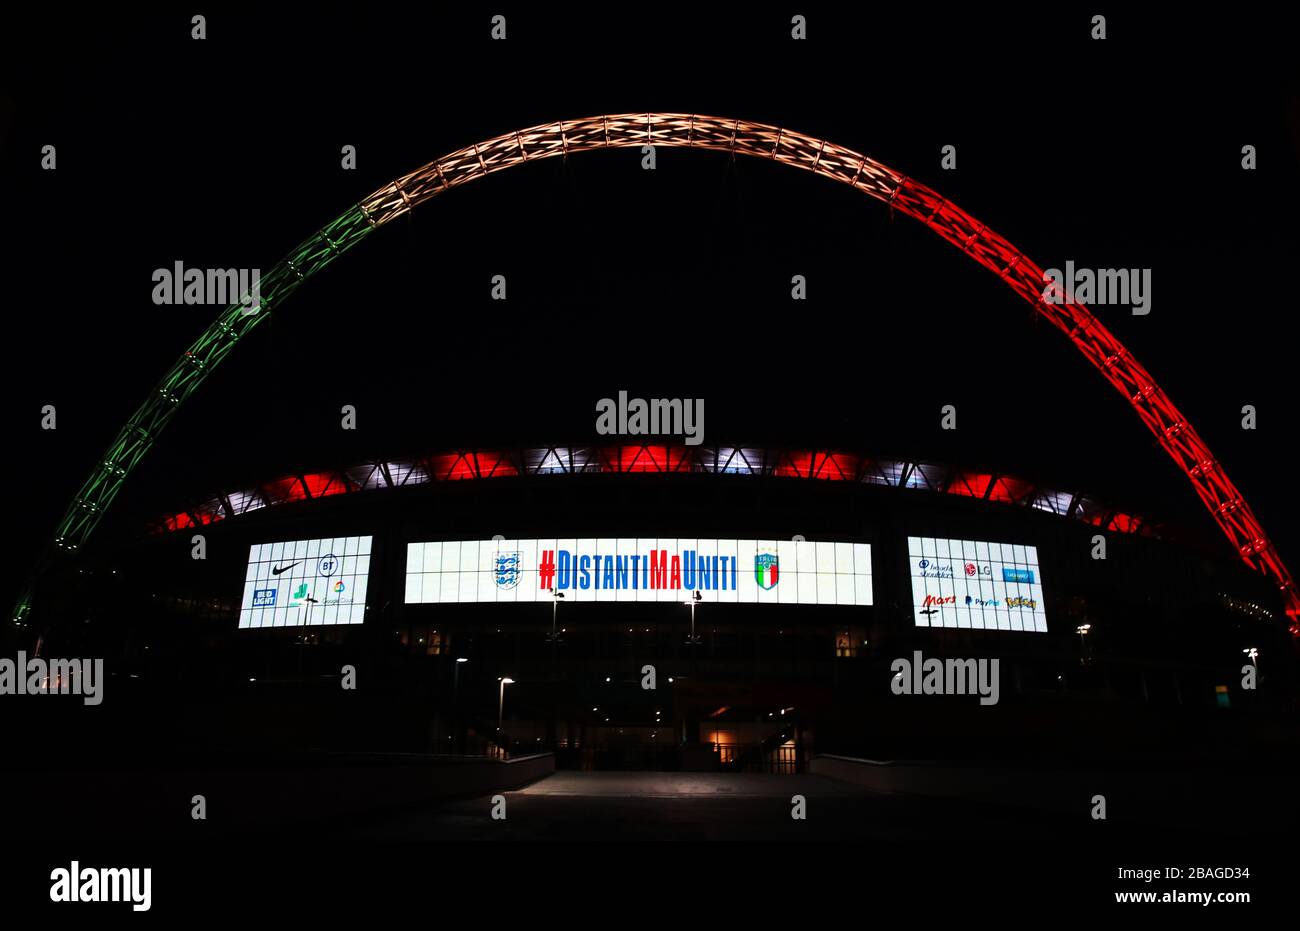 L'arco di Wembley a Londra è illuminato dai colori della bandiera italiana come gesto di solidarietà da parte della squadra di calcio inglese. Foto Stock